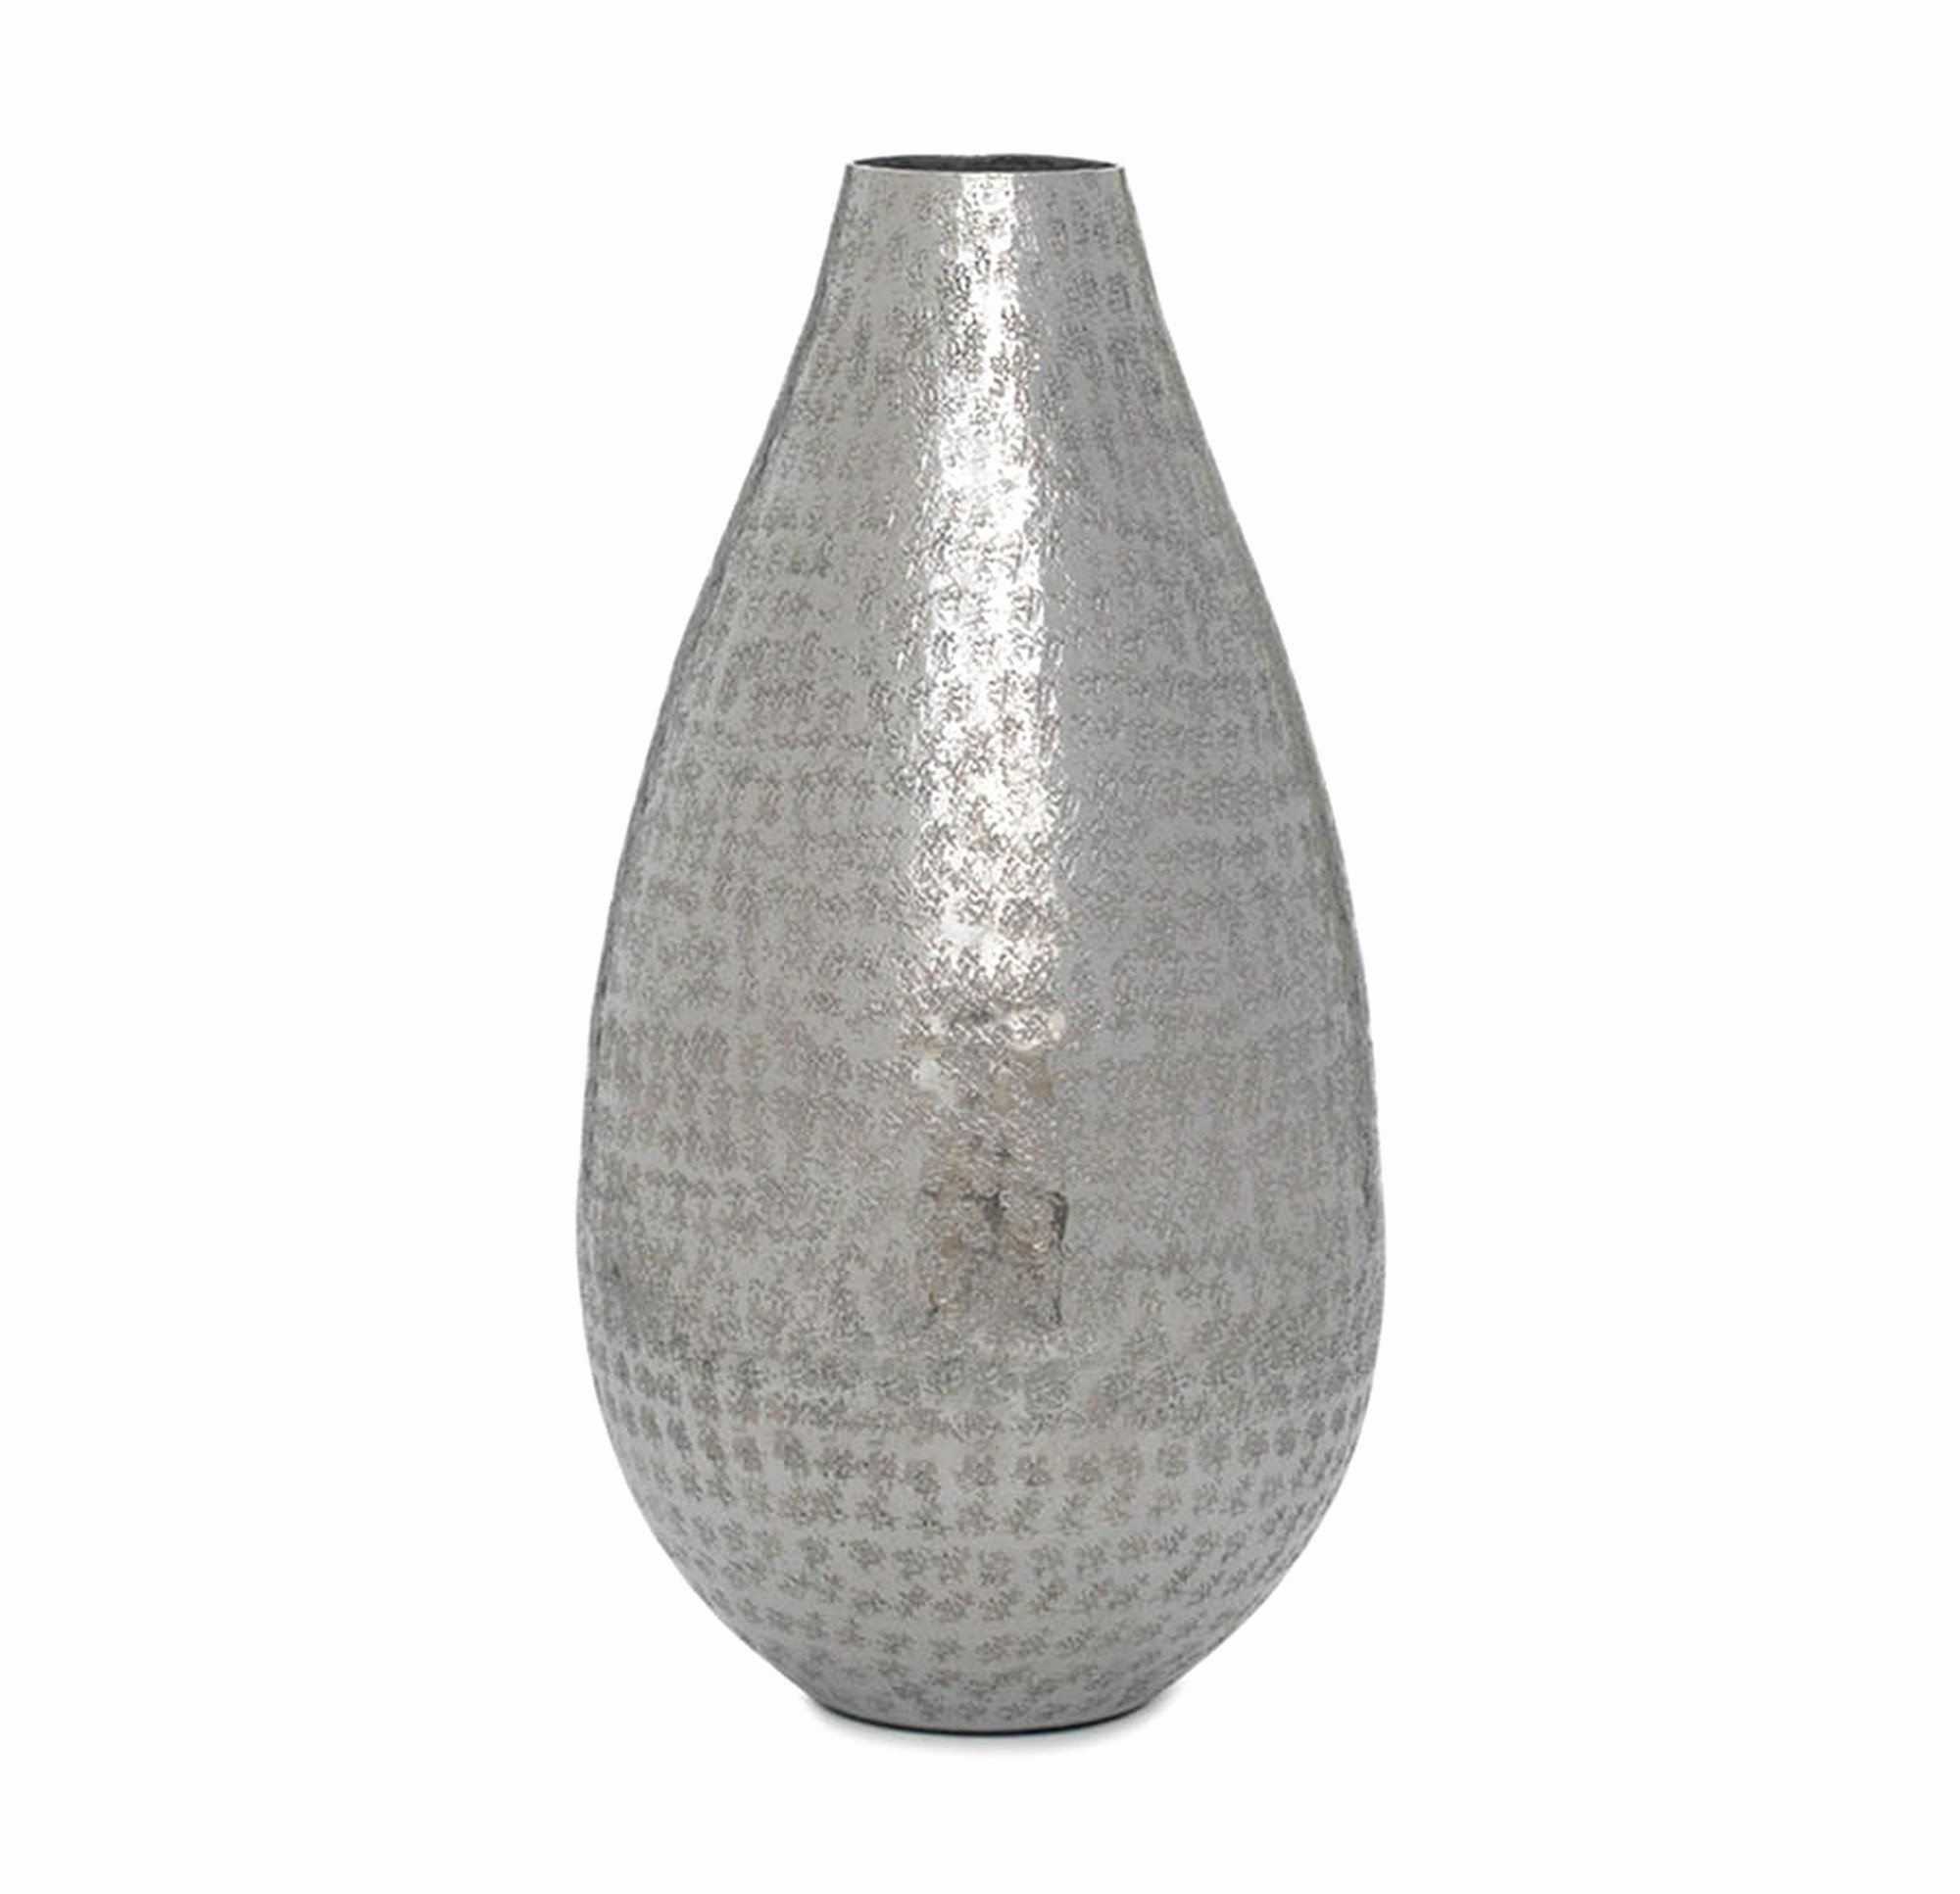 25 Best Large Silver Vase 2024 free download large silver vase of hammered metal vases silver best vase decoration 2018 regarding g 00 h vases hammered metal vase i 0d tall silver inspiration